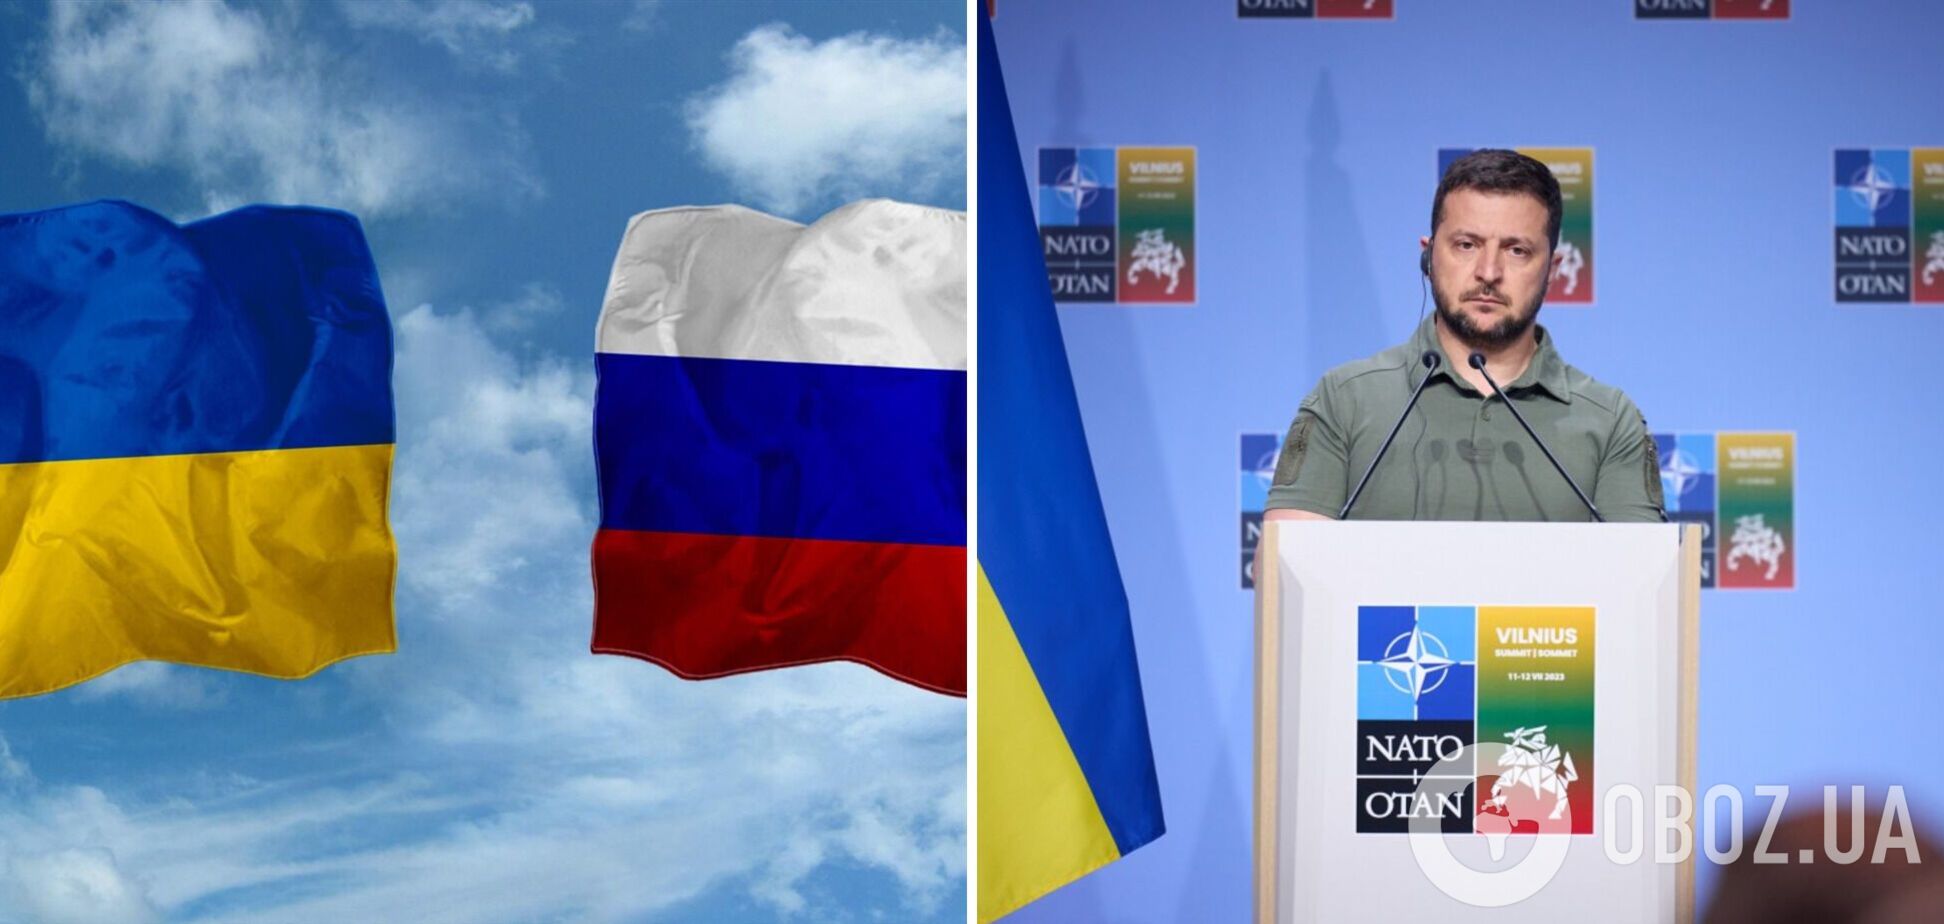 'Мы никогда не обменяем ни одну территорию на какой-либо статус': Зеленский заявил, что заморозка конфликта Украину не устроит